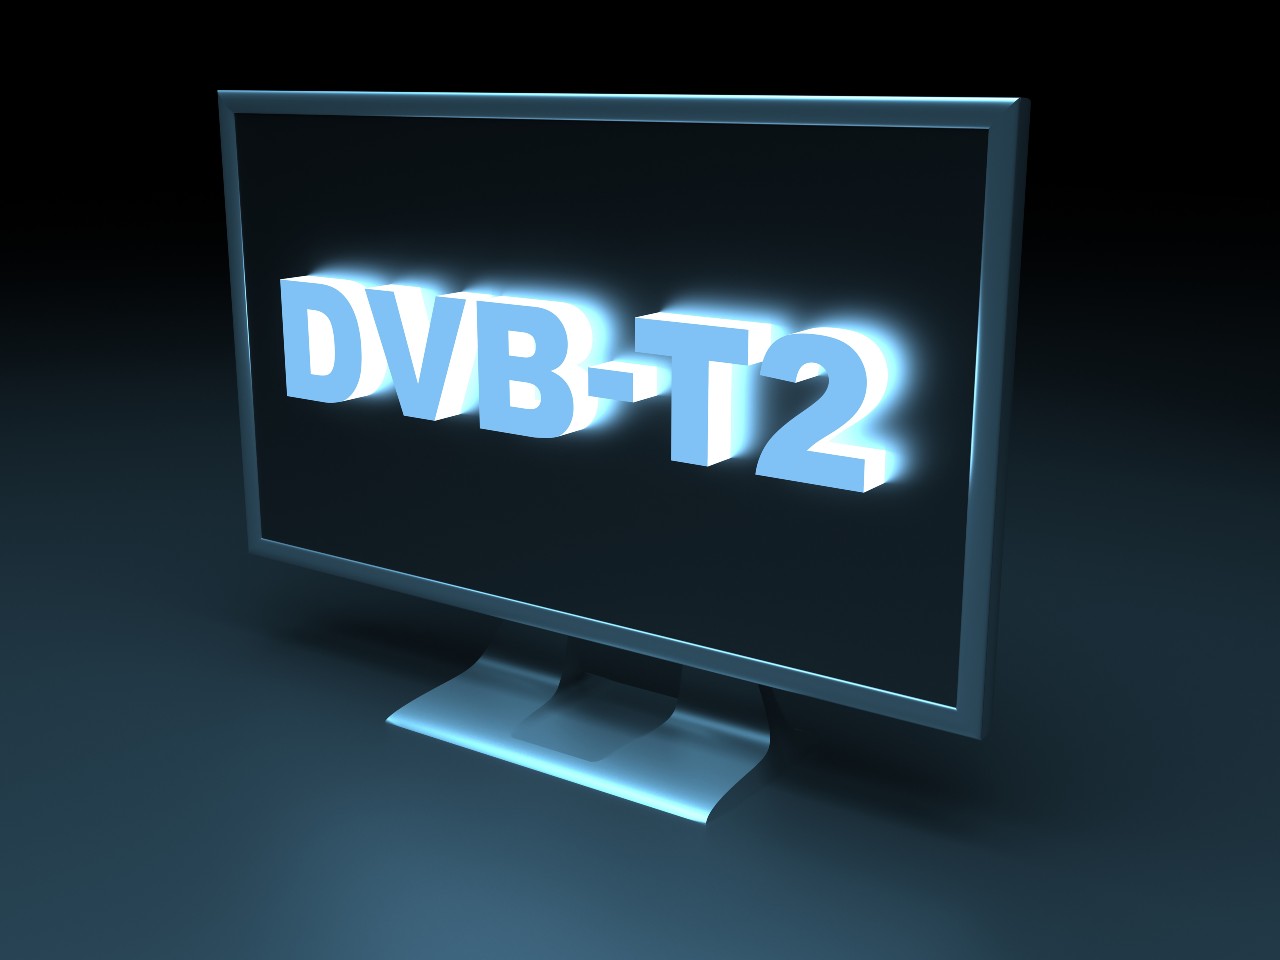 Digitale Terrestre, inizia il viaggio verso il DBV-T2 (Adobe Stock)